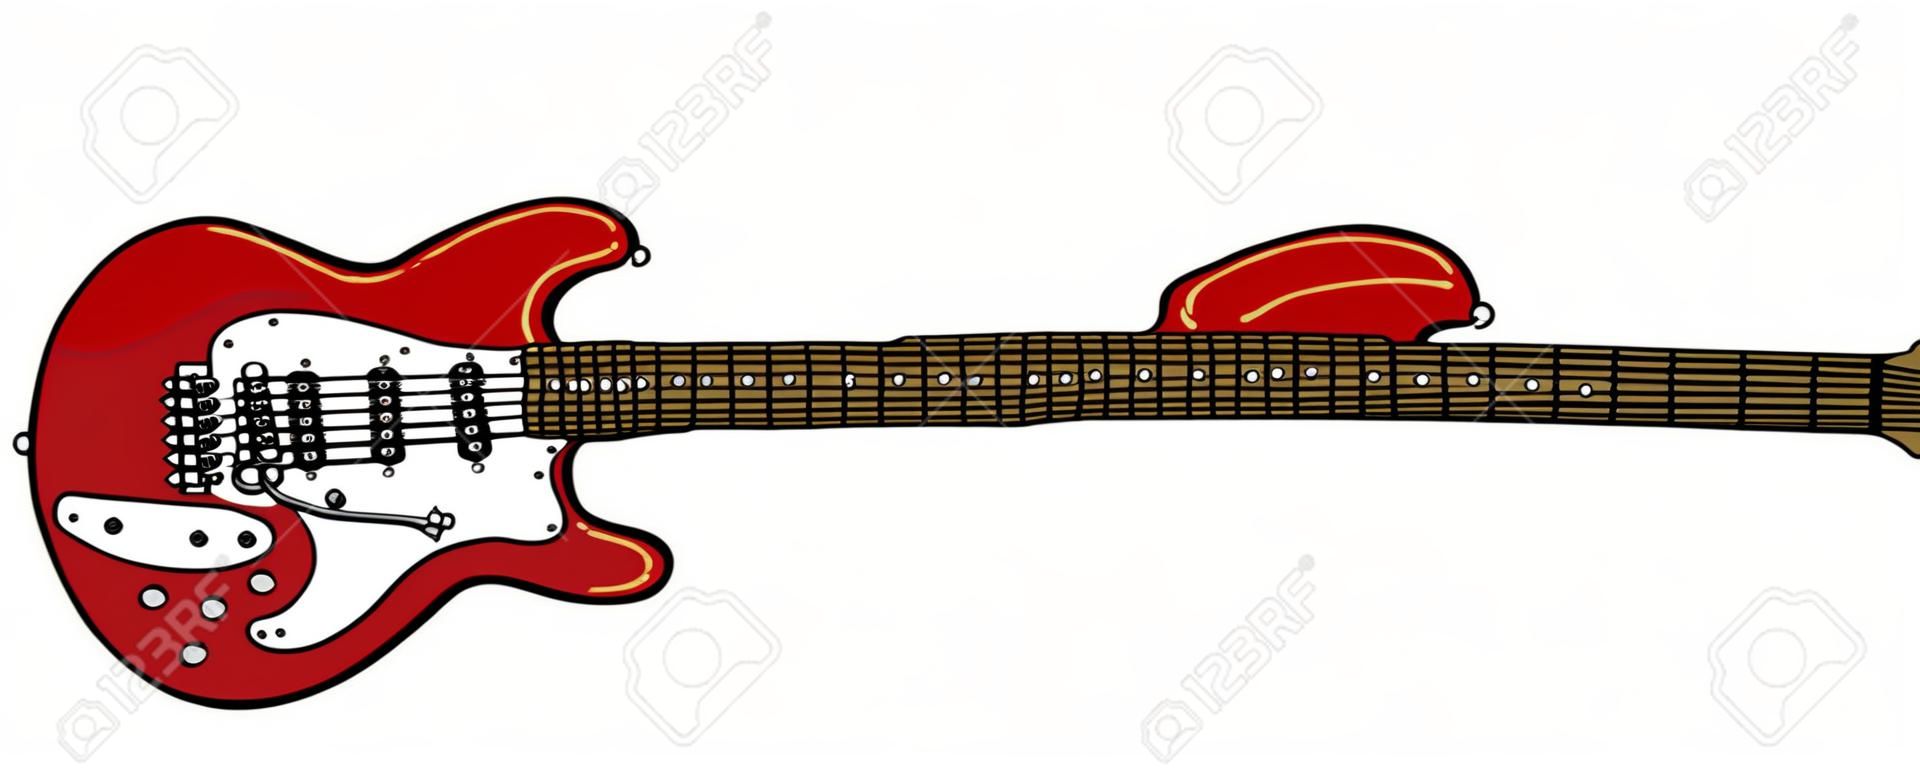 Wektoryzowany rysunek klasycznej czerwonej gitary elektrycznej